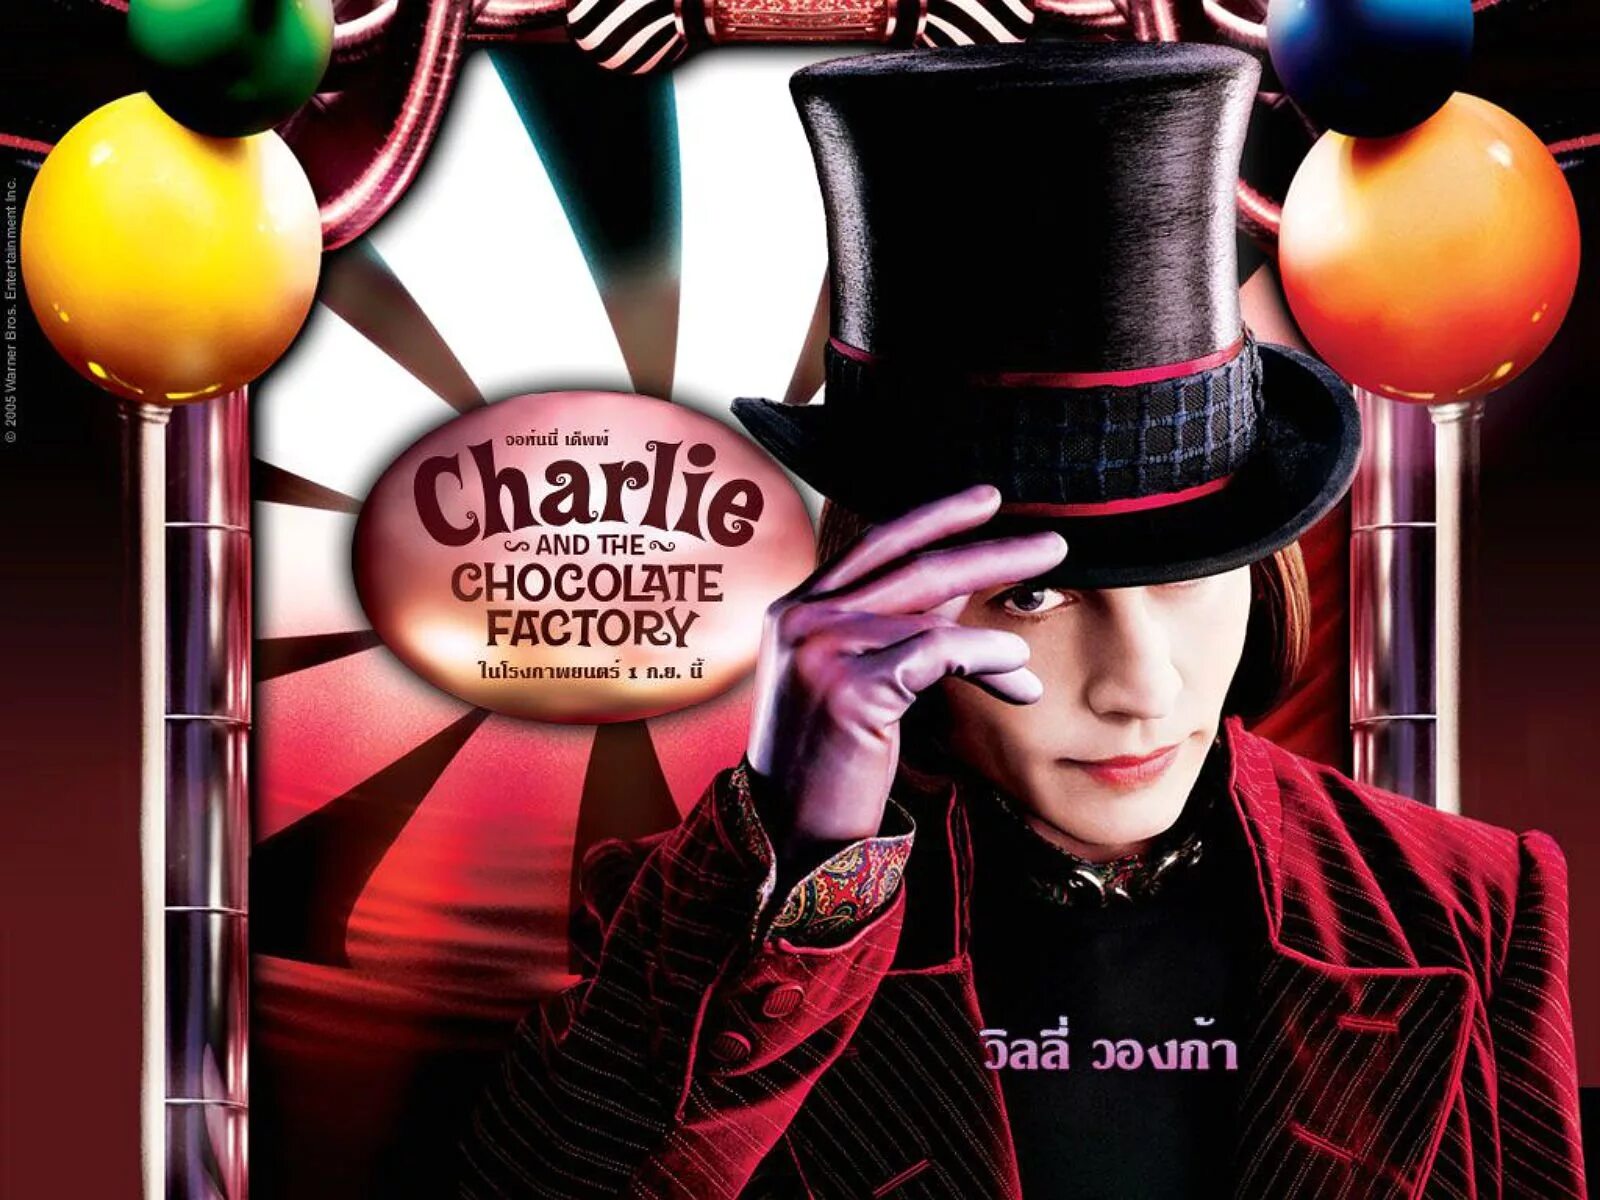 Джонни Депп Чарли и шоколадная фабрика. Чарли и шоколадная фабрика / Charlie and the Chocolate Factory (2005).